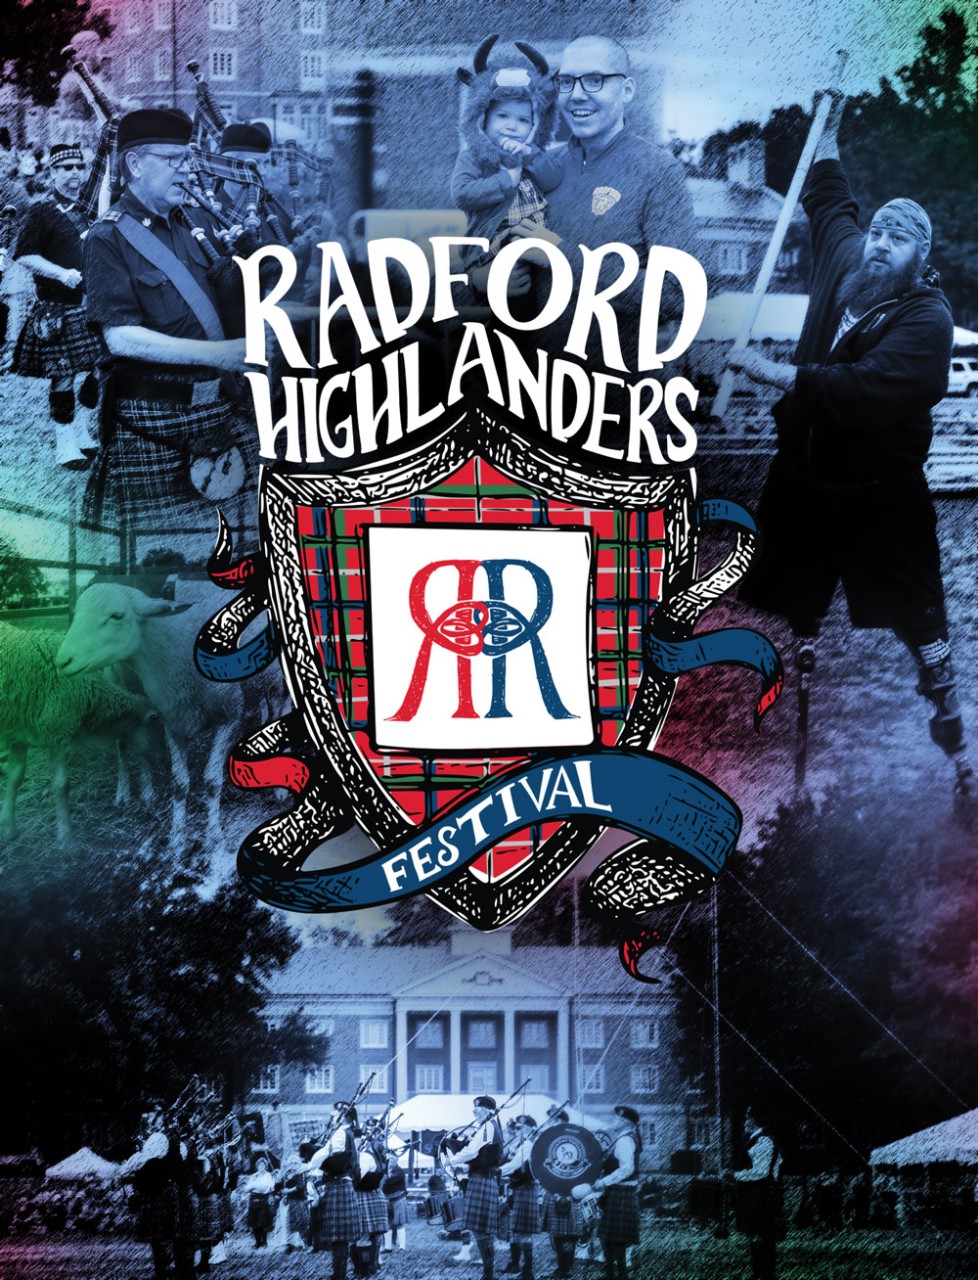 Radford Highlanders Festival